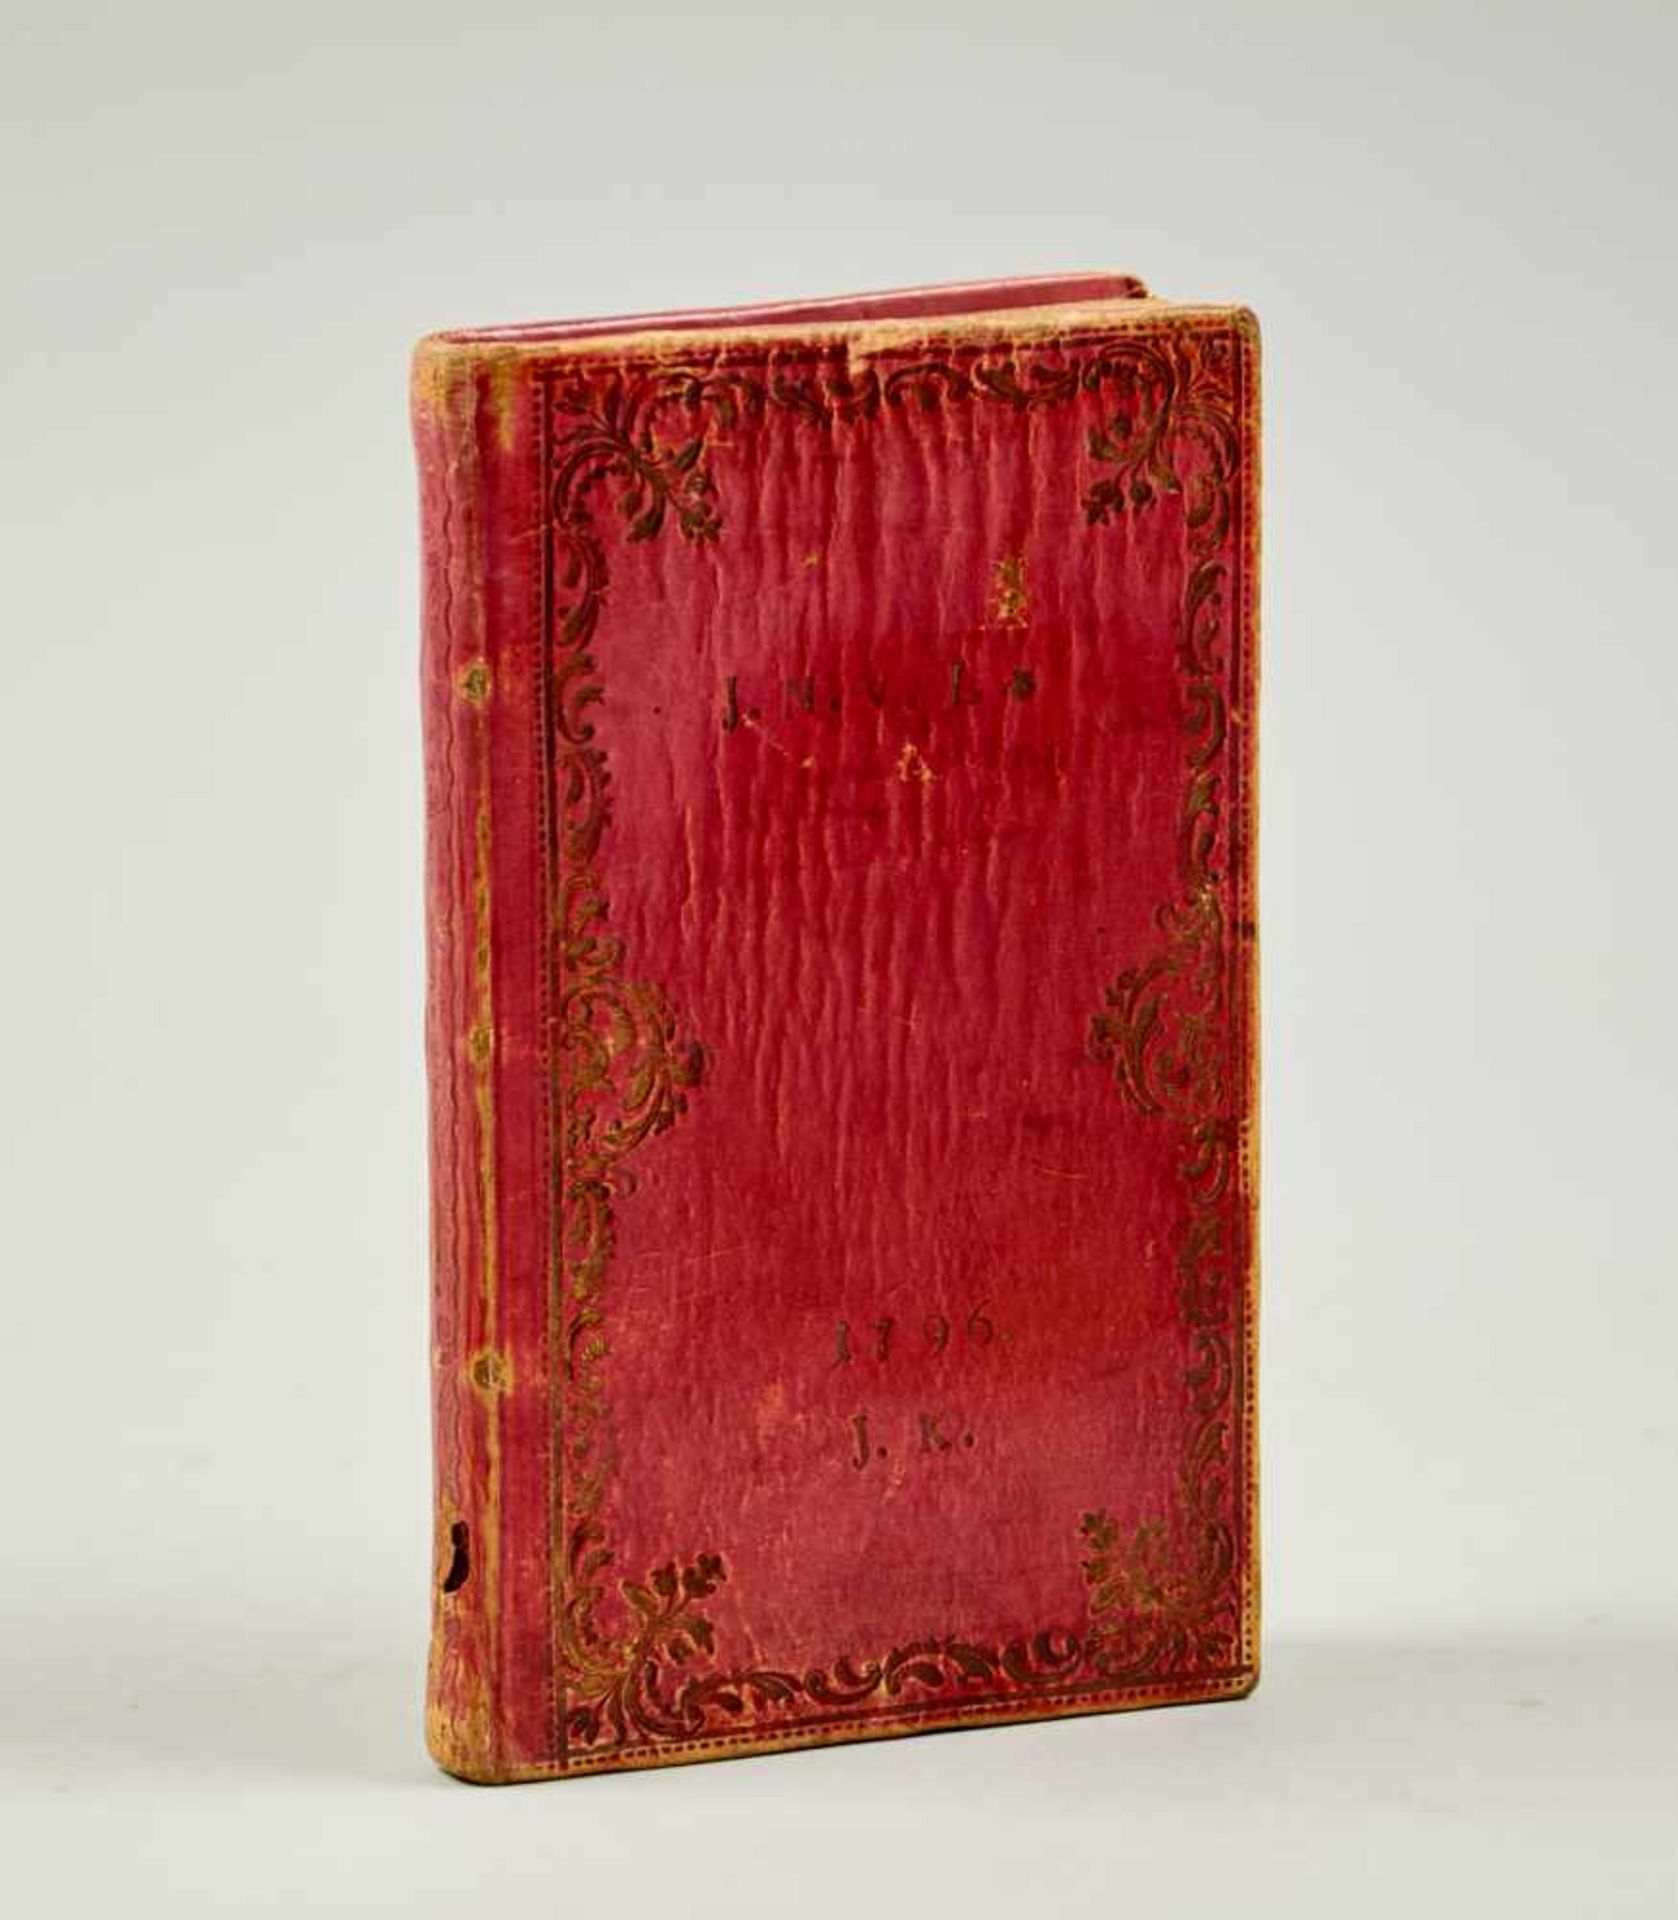 Einbände - Gebetbuch in rot eingefärbtem Pergamentmit goldgepr. Bordüren auf beiden Deckeln, monogr.